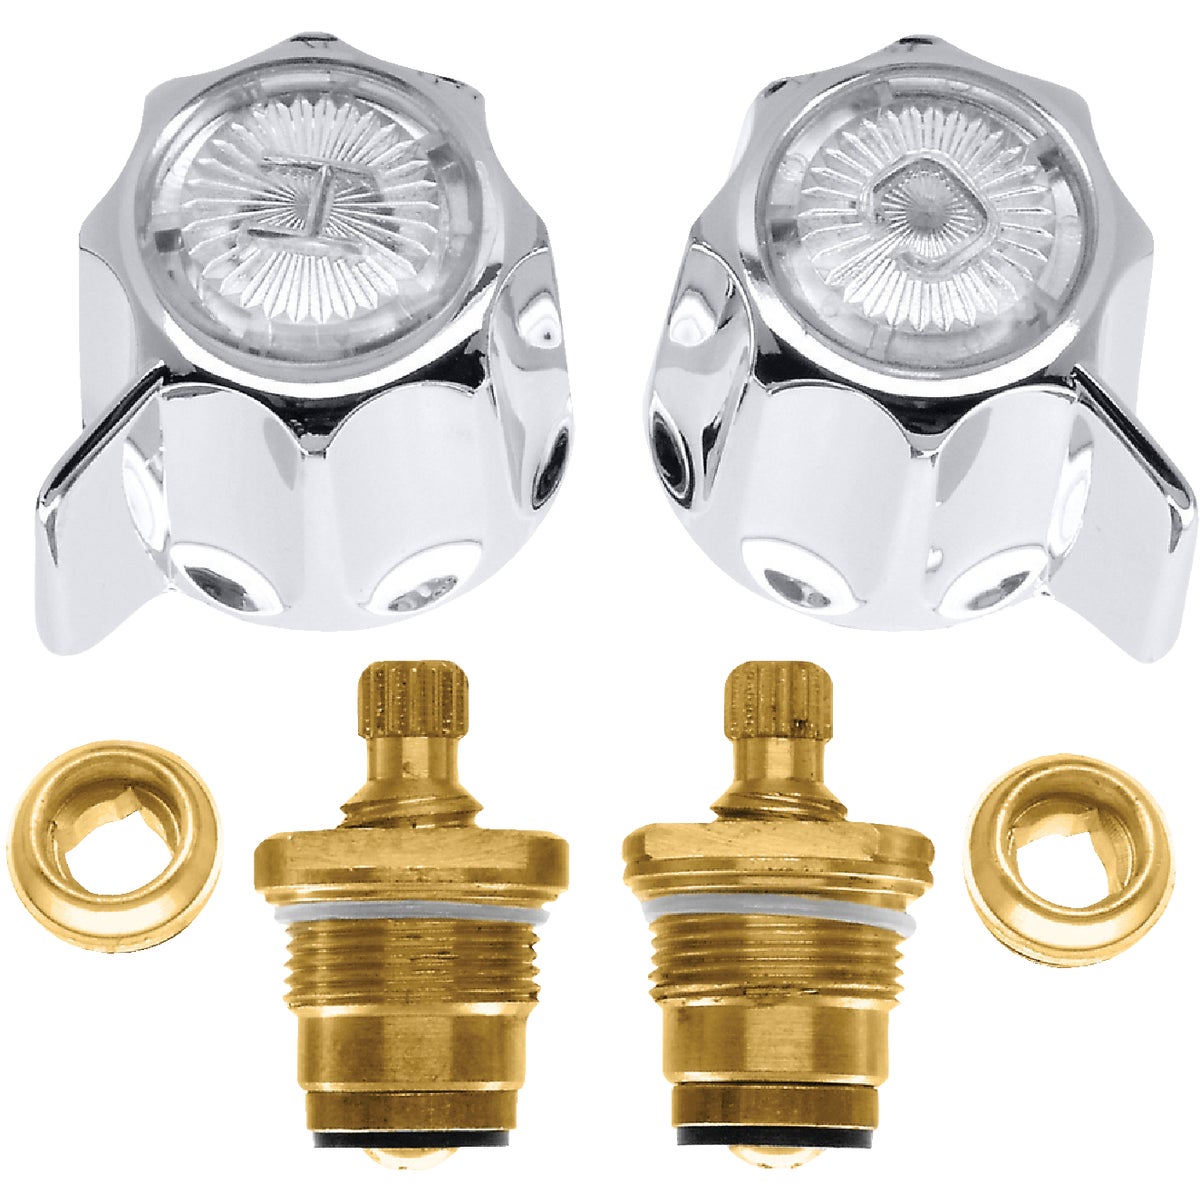 Danco 1B-2H Hot Stem & 1B-2C Stem Brass Faucet Repair Kit